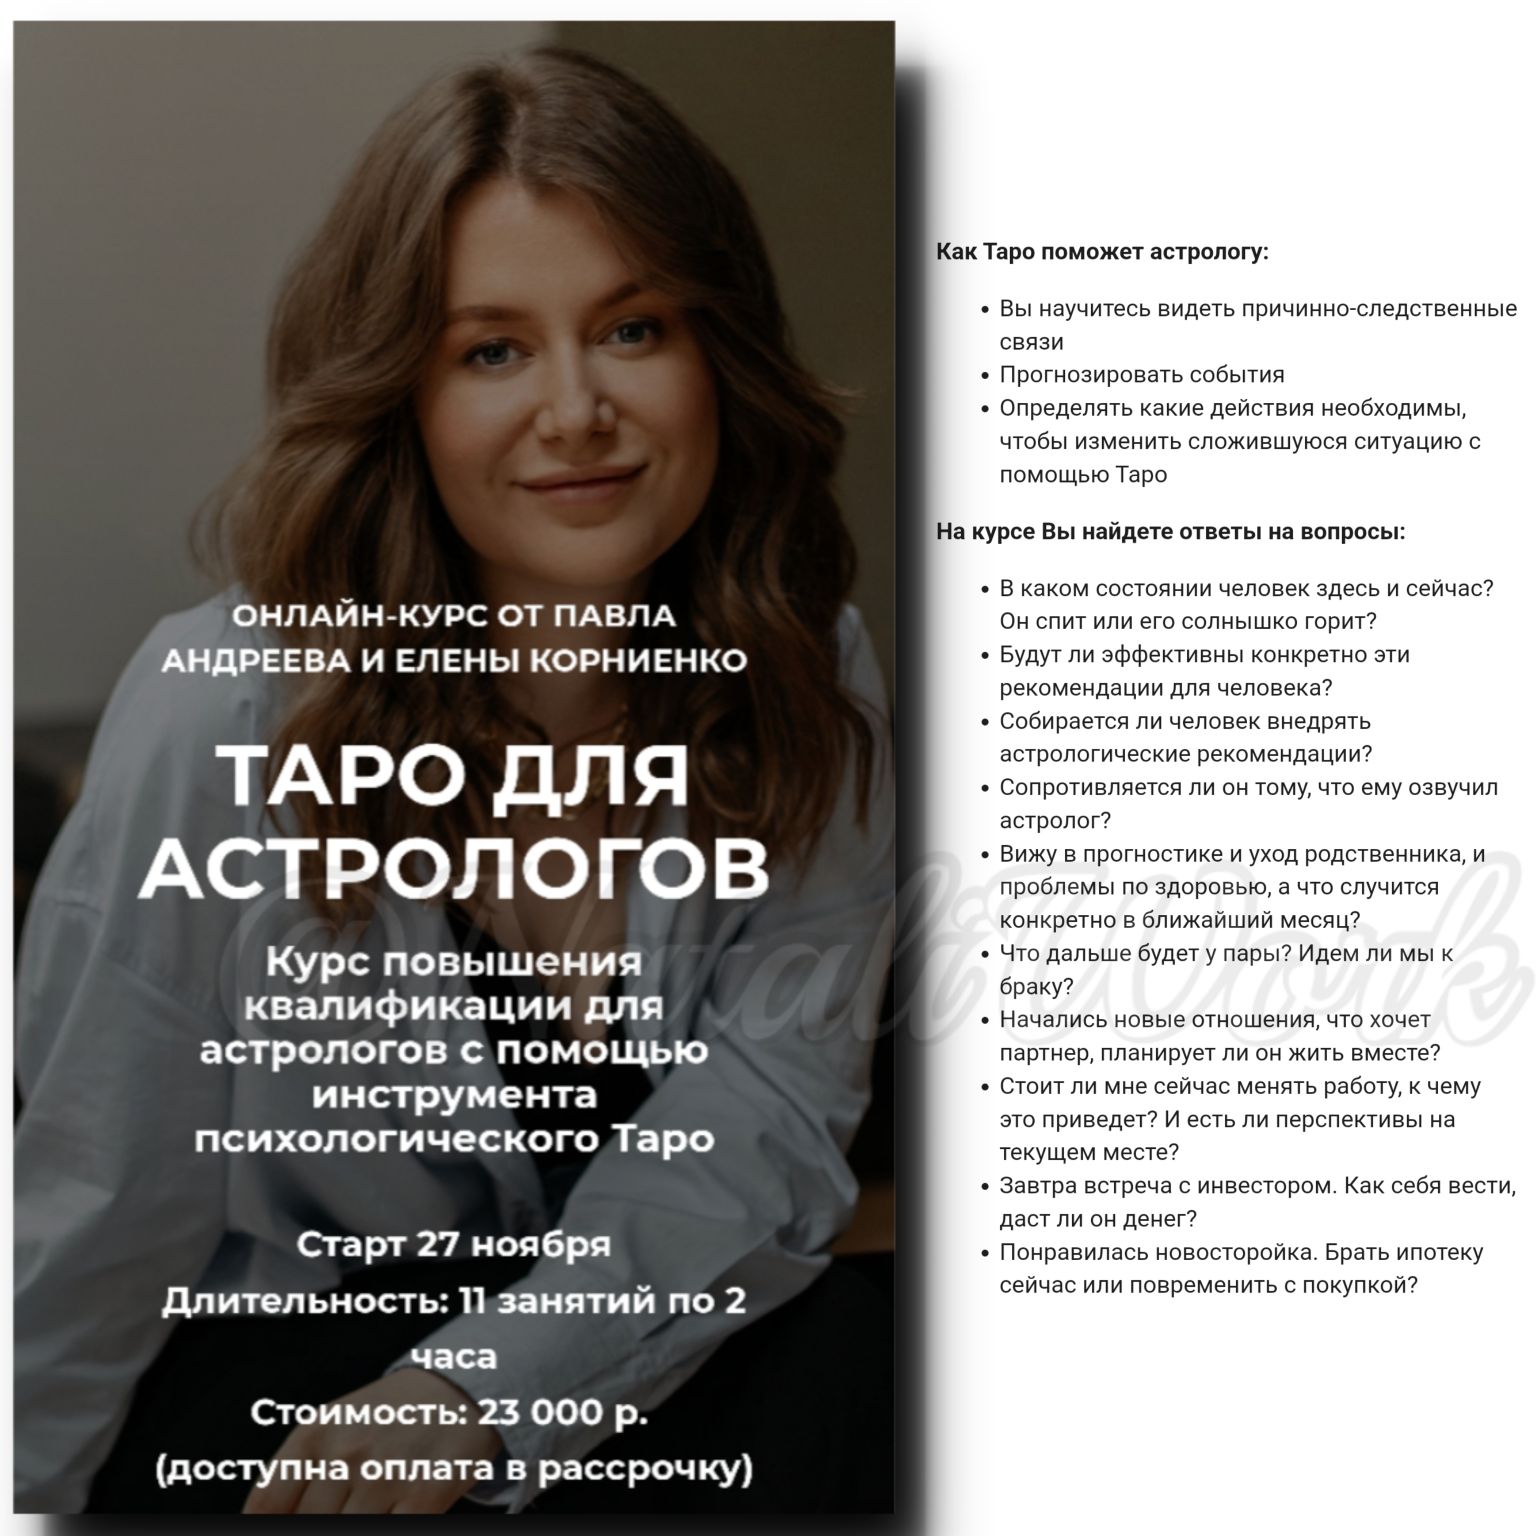 Таролог Астролог Шульпина